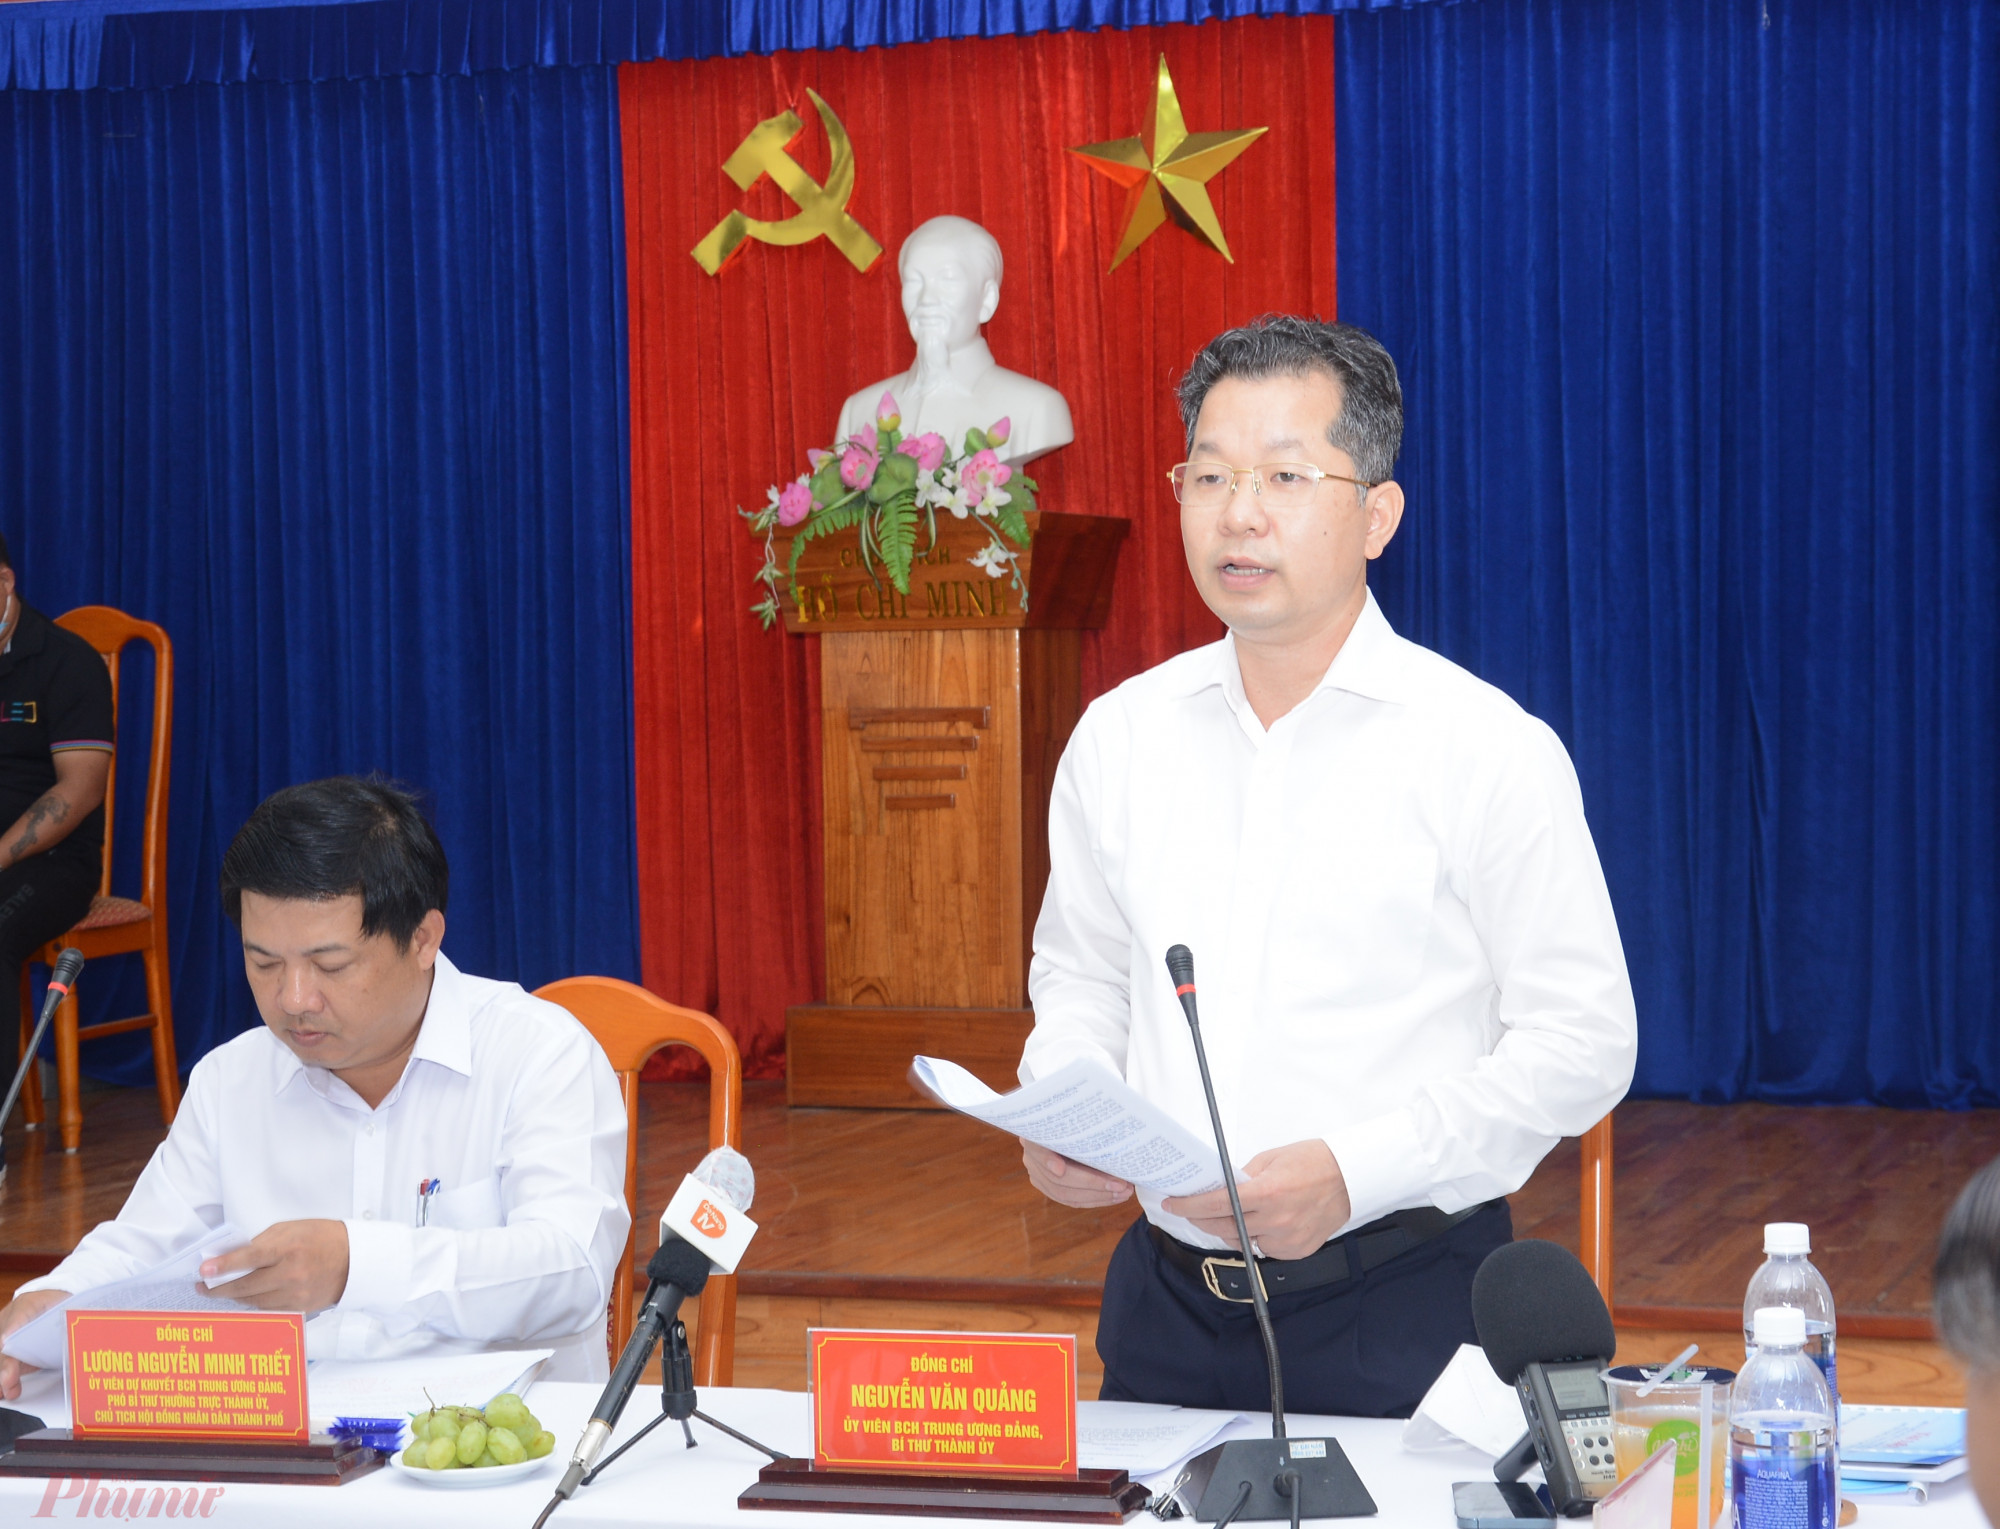 Bí thư Đà Nẵng Nguyễn Văn Quảng chỉ đạo xử lý nghiêm việc các chủ đầu tư chậm triển khai dự án trong khu công nghiệp